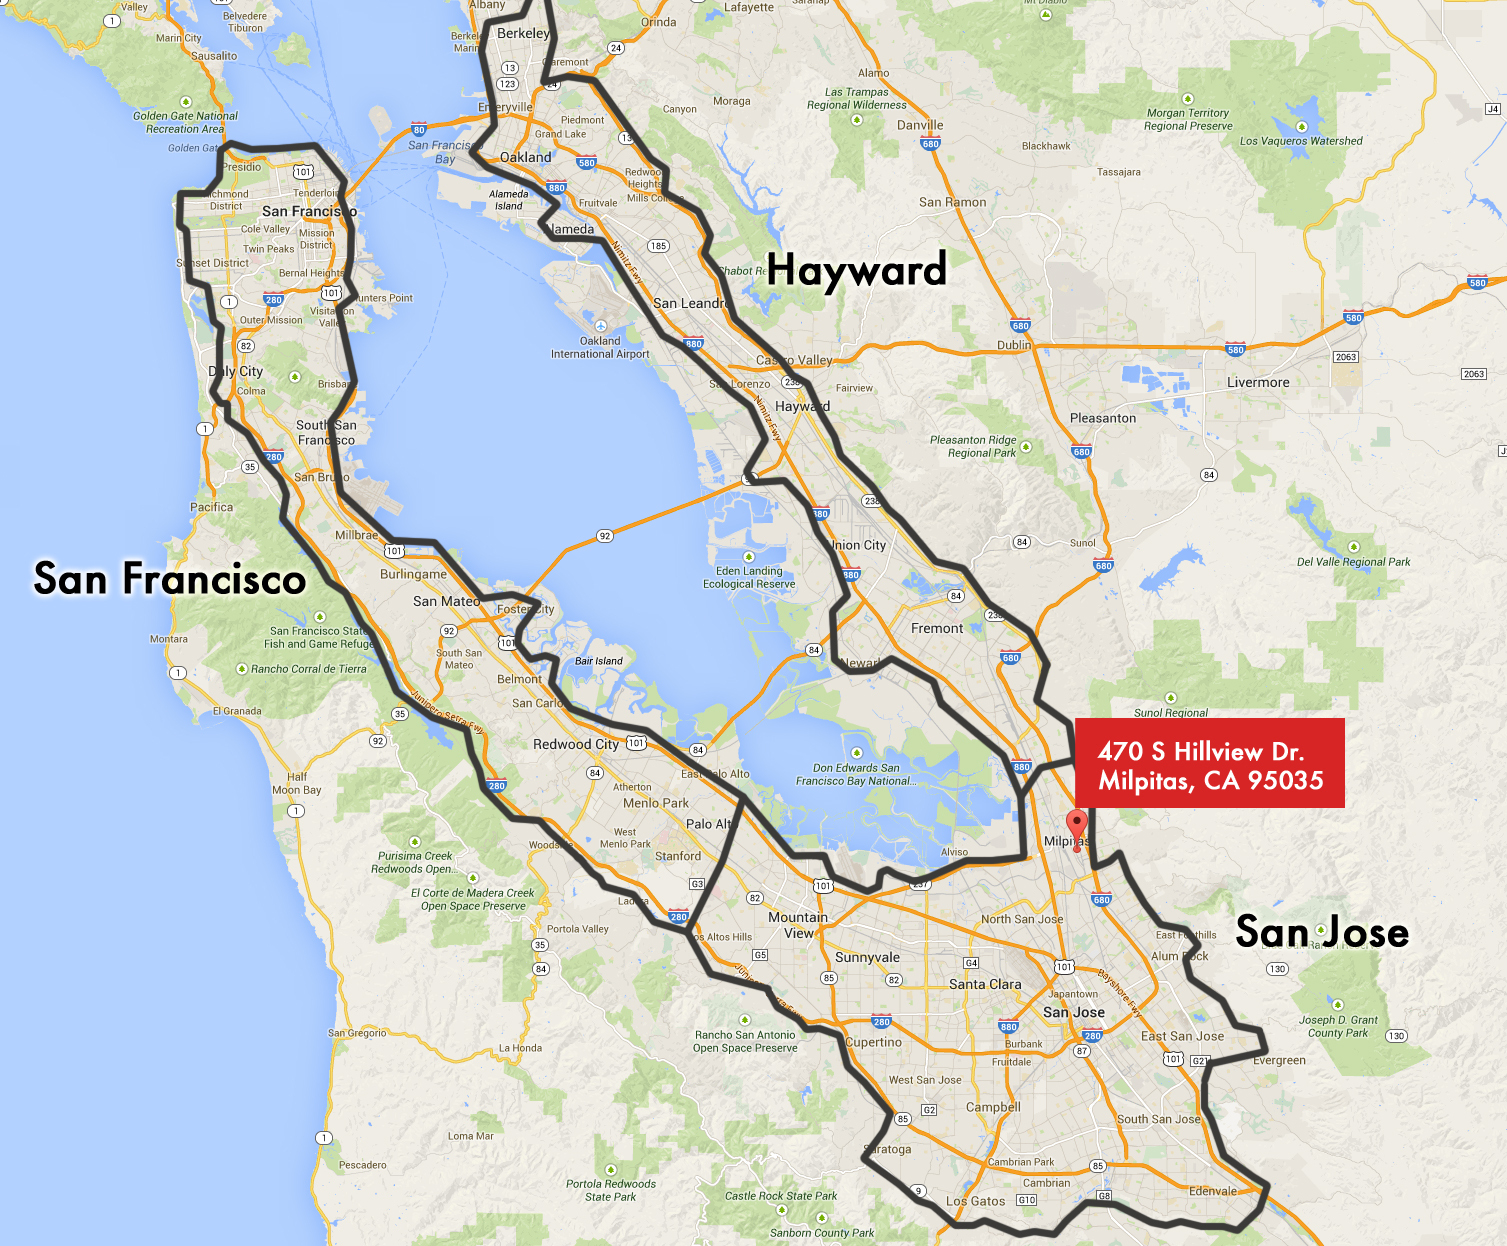 San Jose California Map - Touran - San Jose California Map